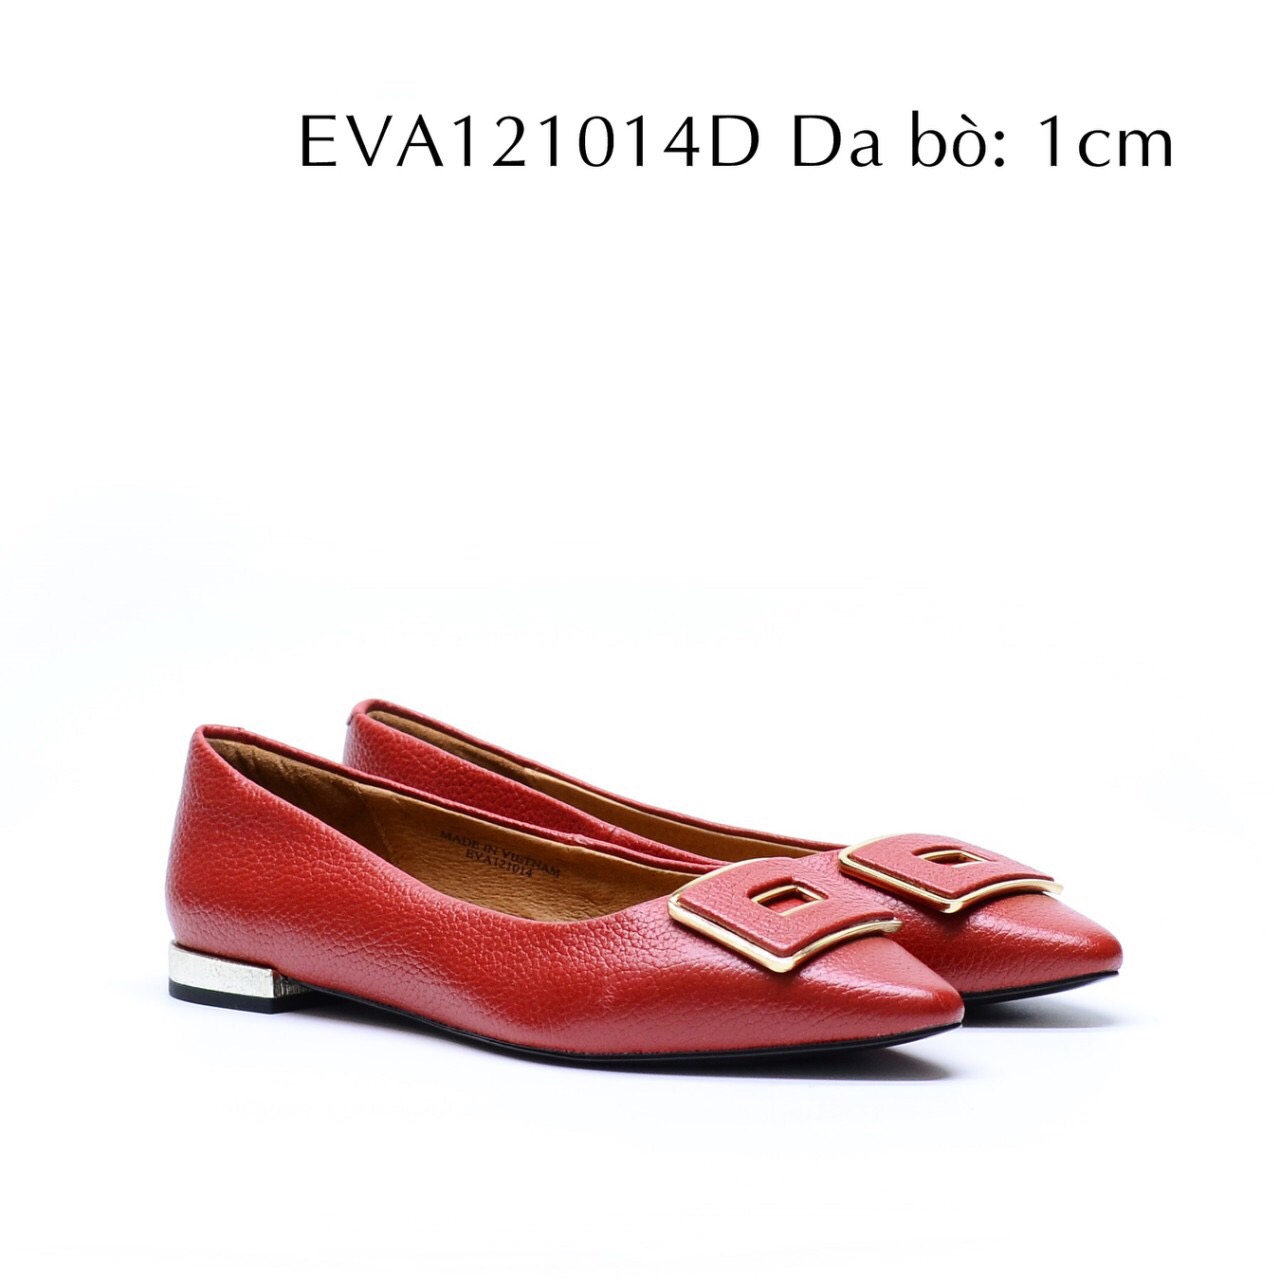 Giày bệt da thật EVA121014D thiết kế nơ vuông độc đáo, nổi bật